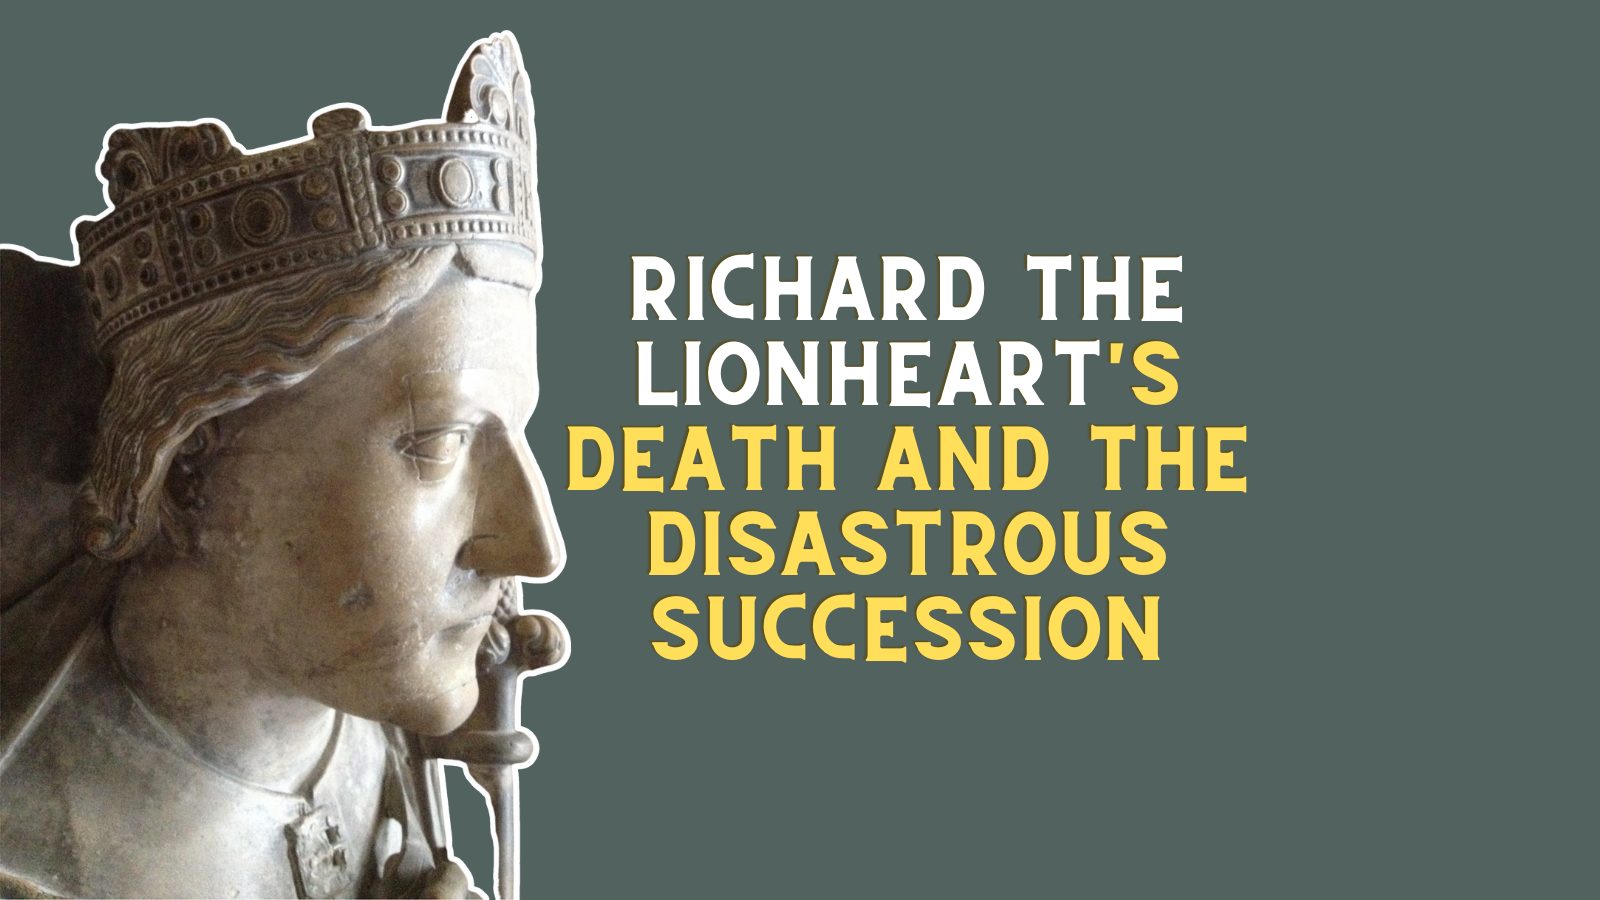 Richard the Lionheart's Death